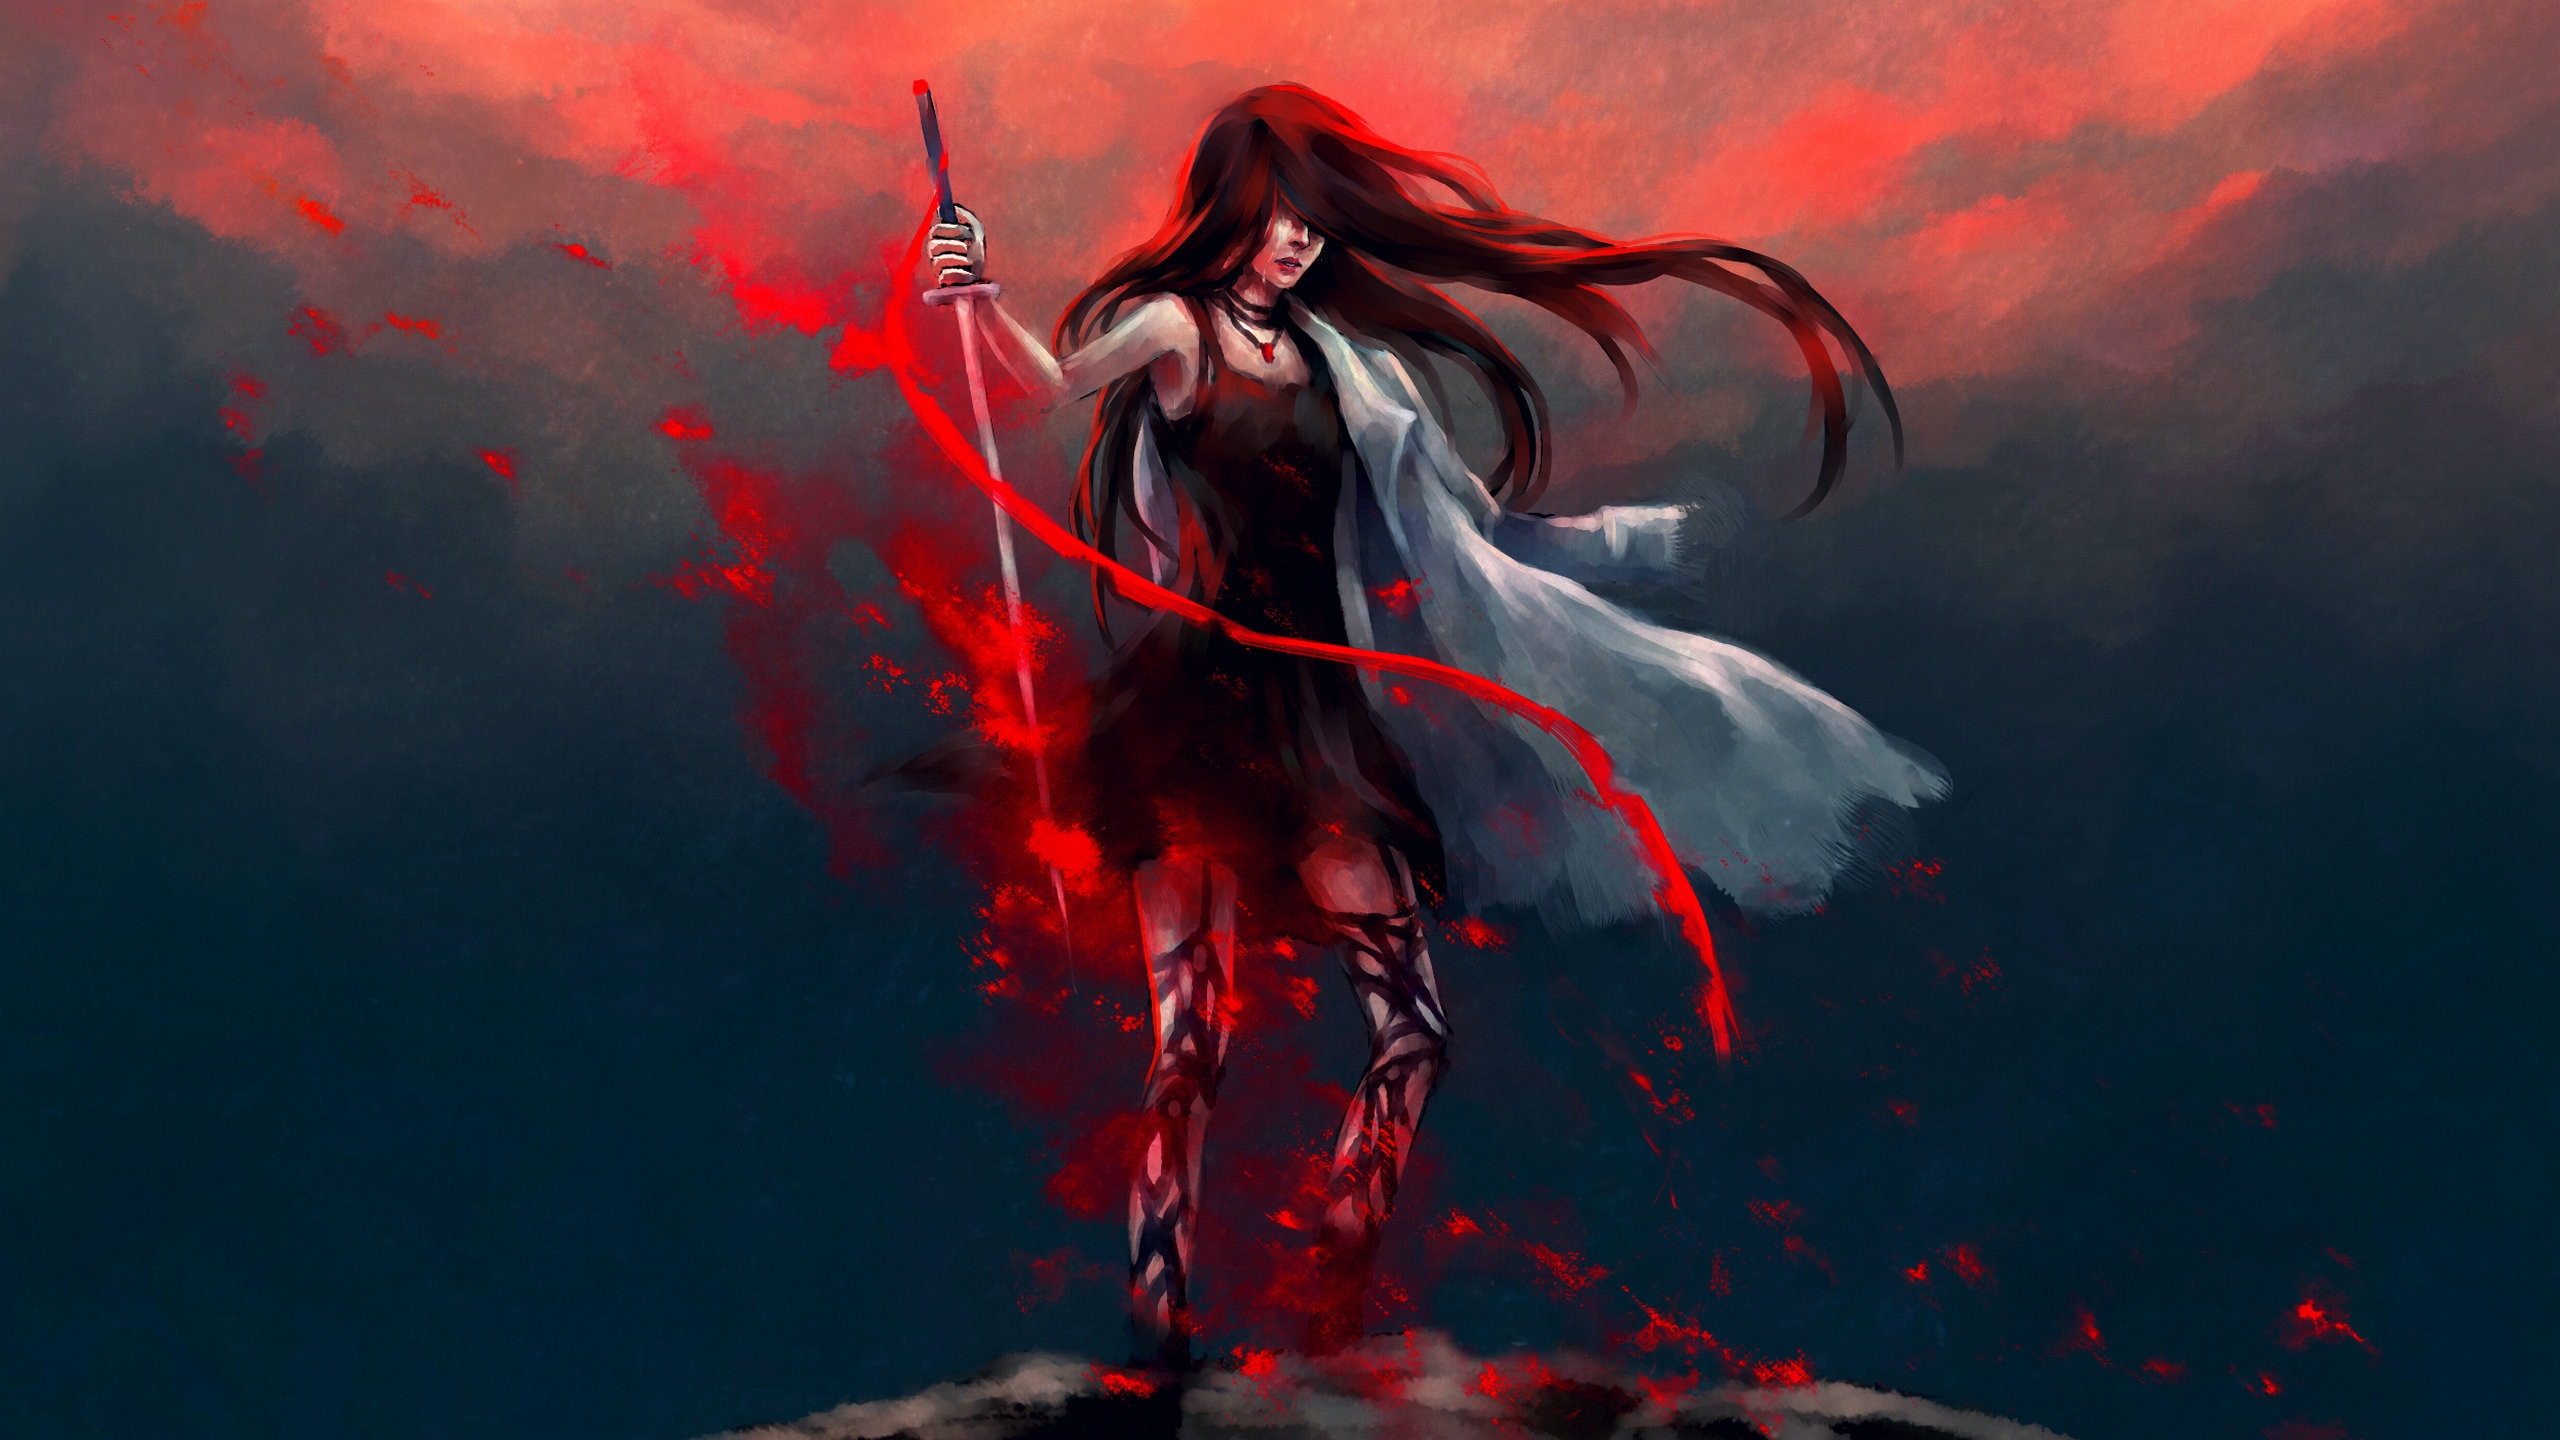 Anime Girl Katana Warrior With Sword, HD Anime, 4k Wallpapers, Images